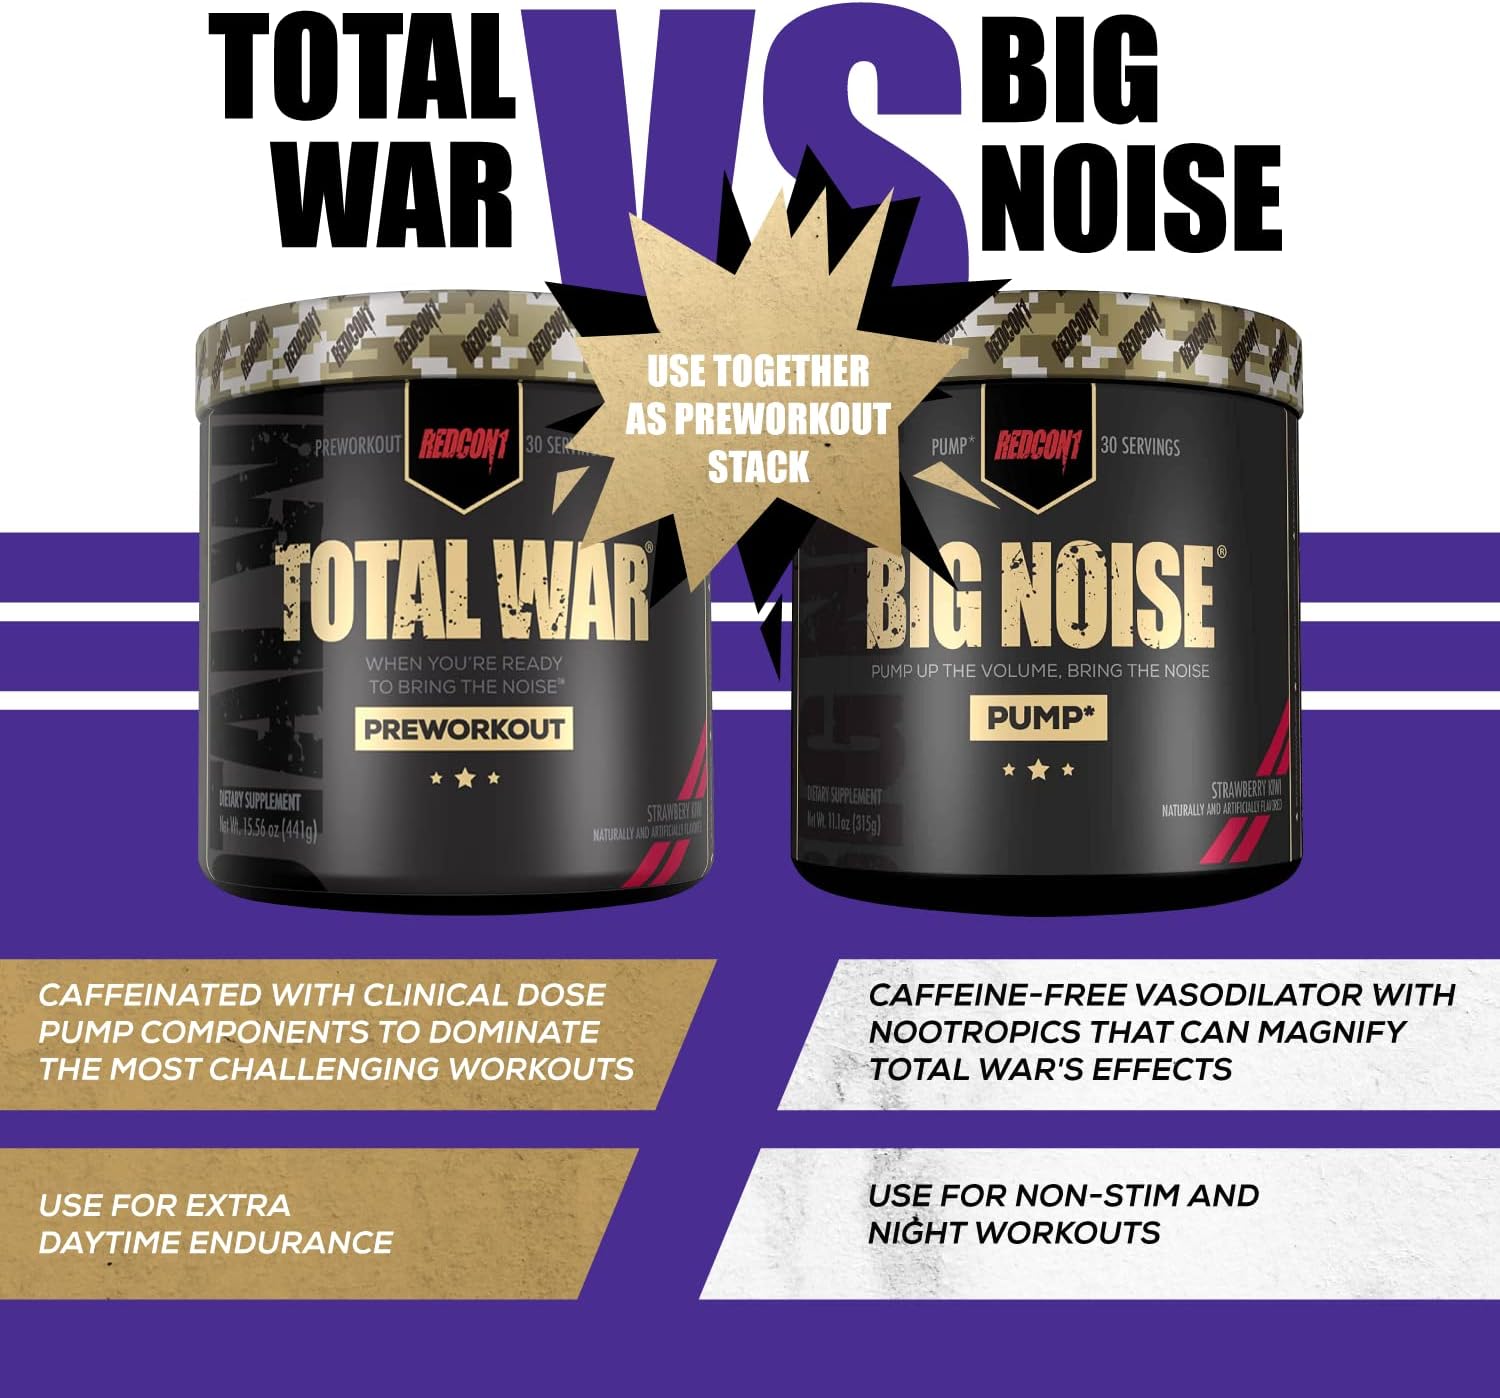 REDCON1 Total War Preworkout (Sour Gummy Bear) & Big Noise Non-Stim Pr